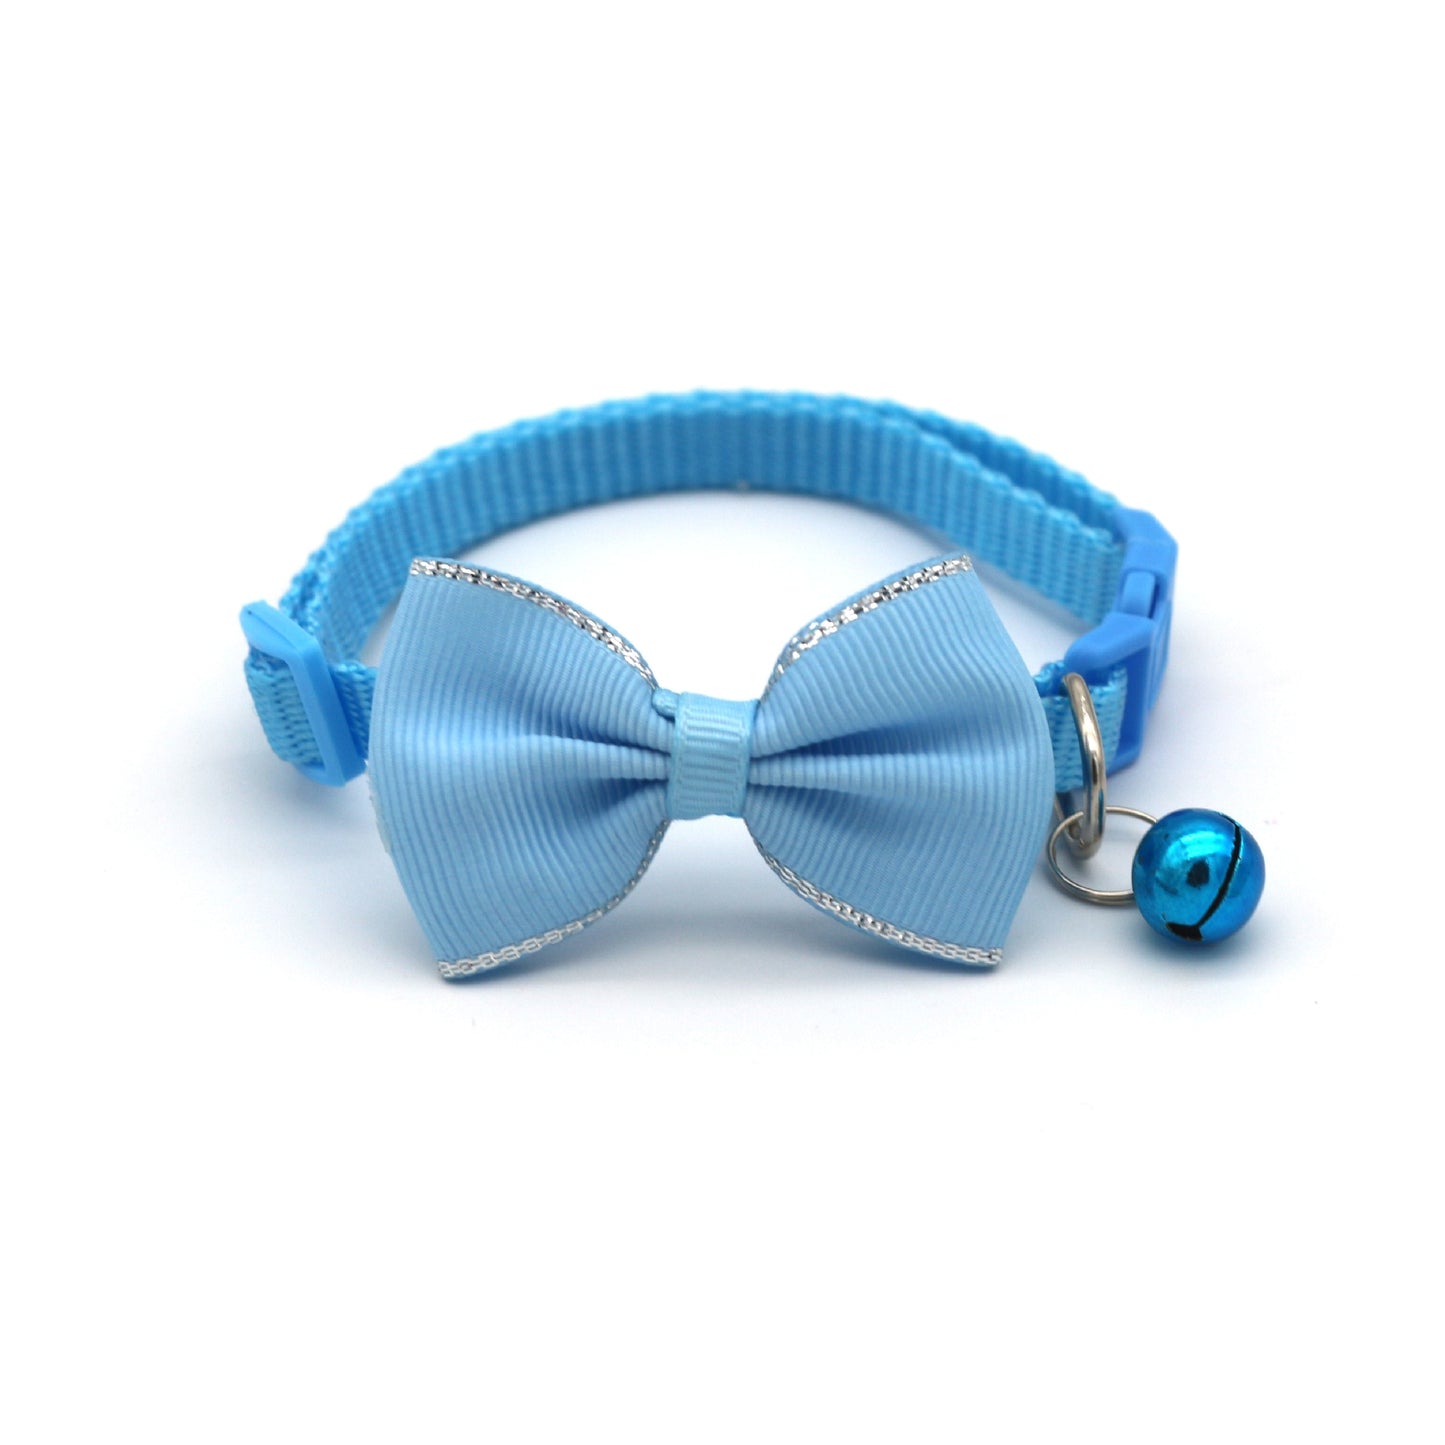 Strik en bellen halsband in licht blauw